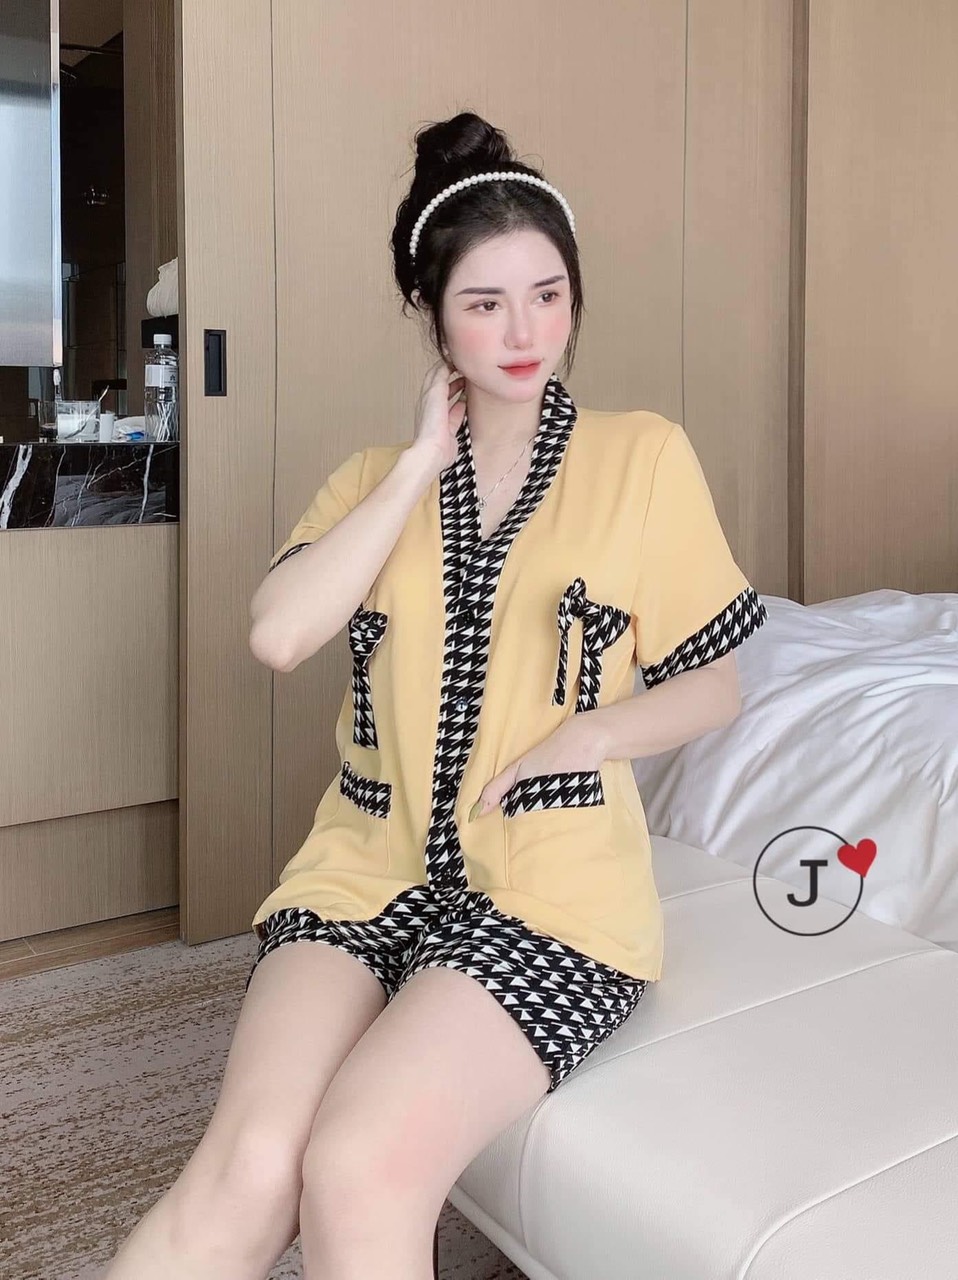 Đồ Bộ Pijama Nữ Tiểu Thư Kimono Tay Cộc Quần Đùi Họa Tiết Phối Nơ , Bộ Đồ Ngủ Cho Nữ Tay Ngắn ,Bộ Đồ Nữ Đẹp Giá Rẻ ,Bộ Đồ Mặc Nhà Cho Nữ Chất Kate Lụa Cho Nữ Dưới 58kg